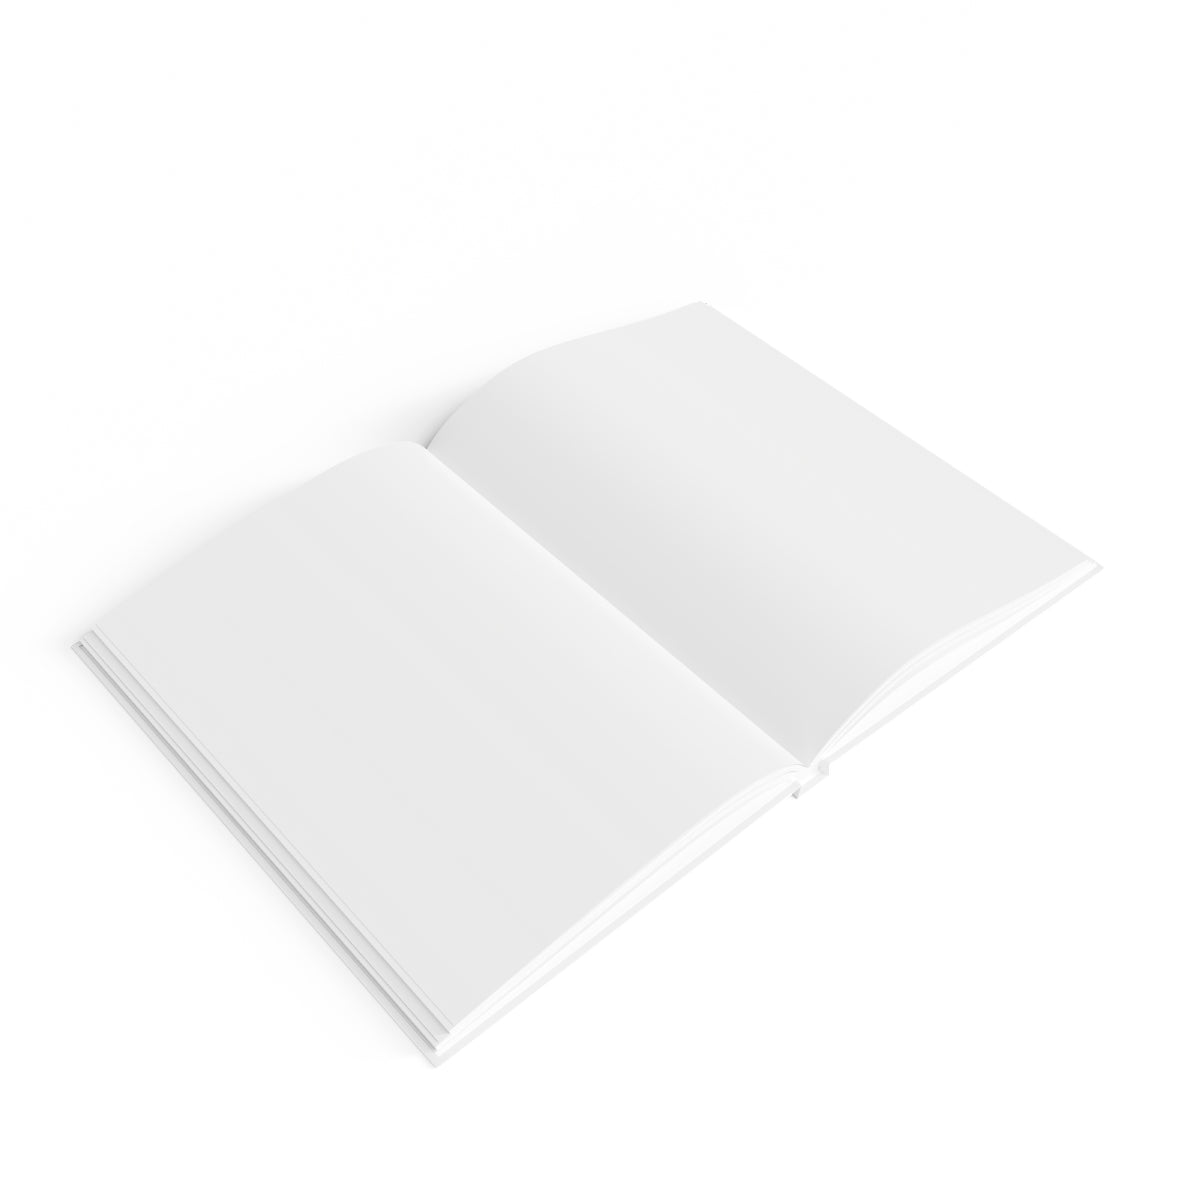 Half Geode Journal - Blank